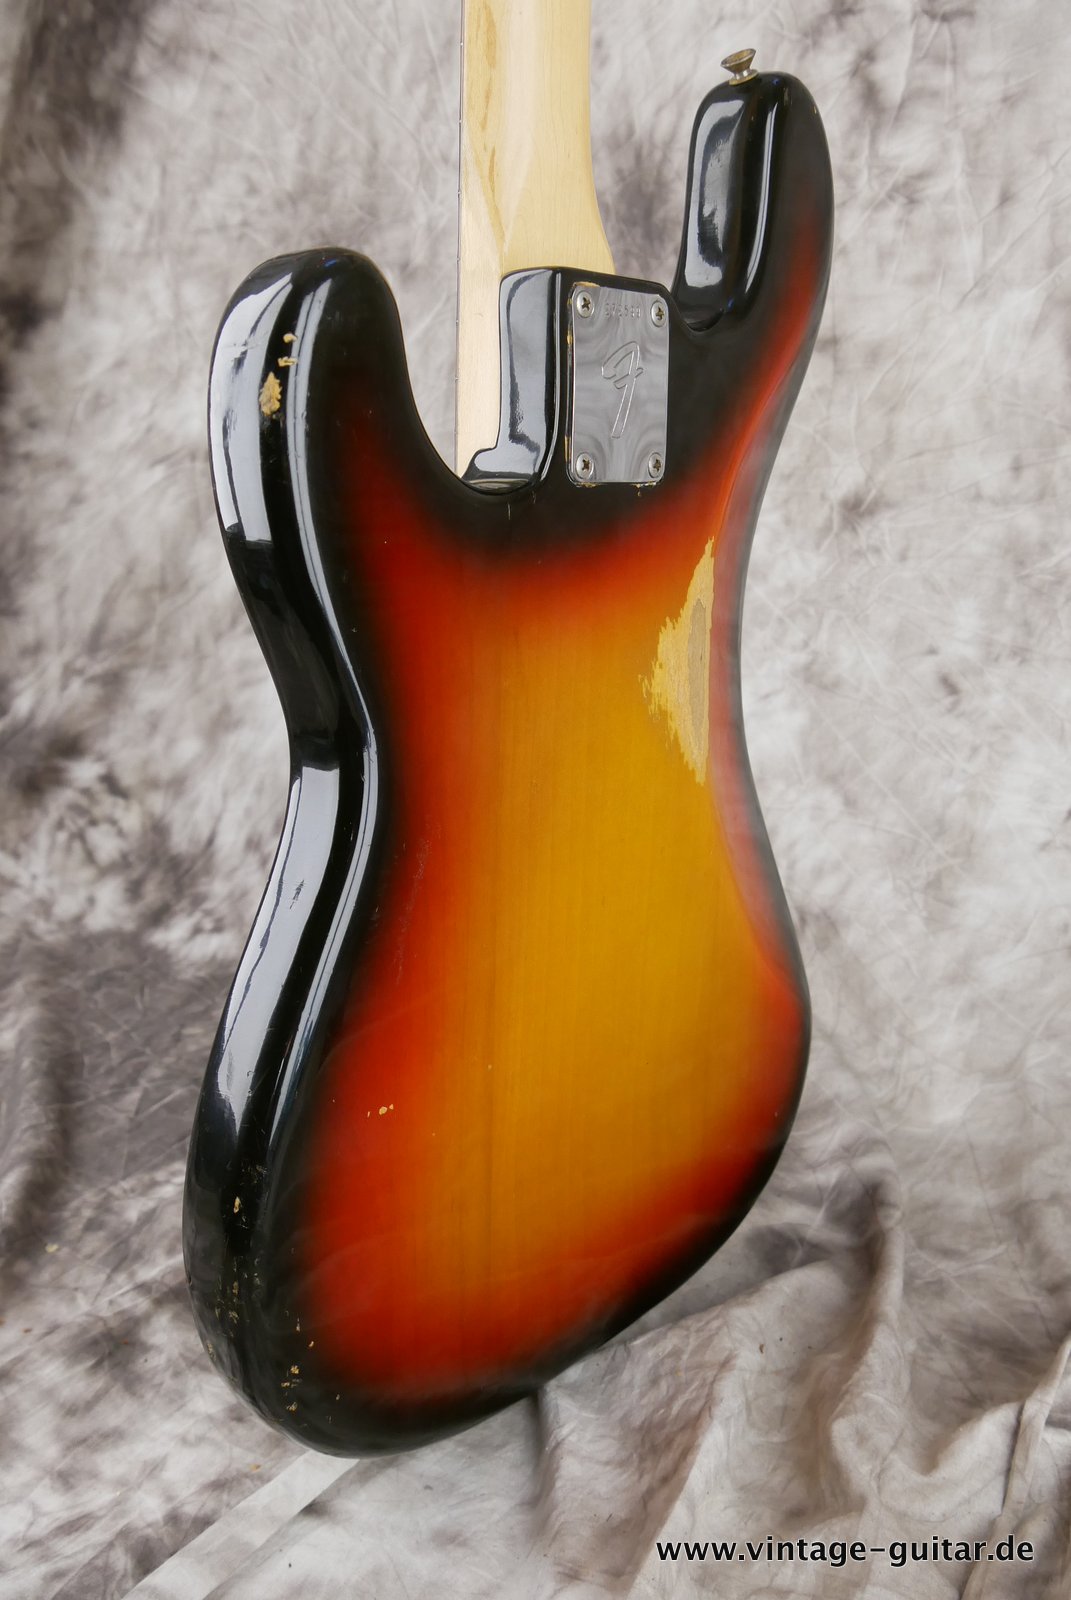 Fender-Precision-Bass-sunburst-1969-007.JPG